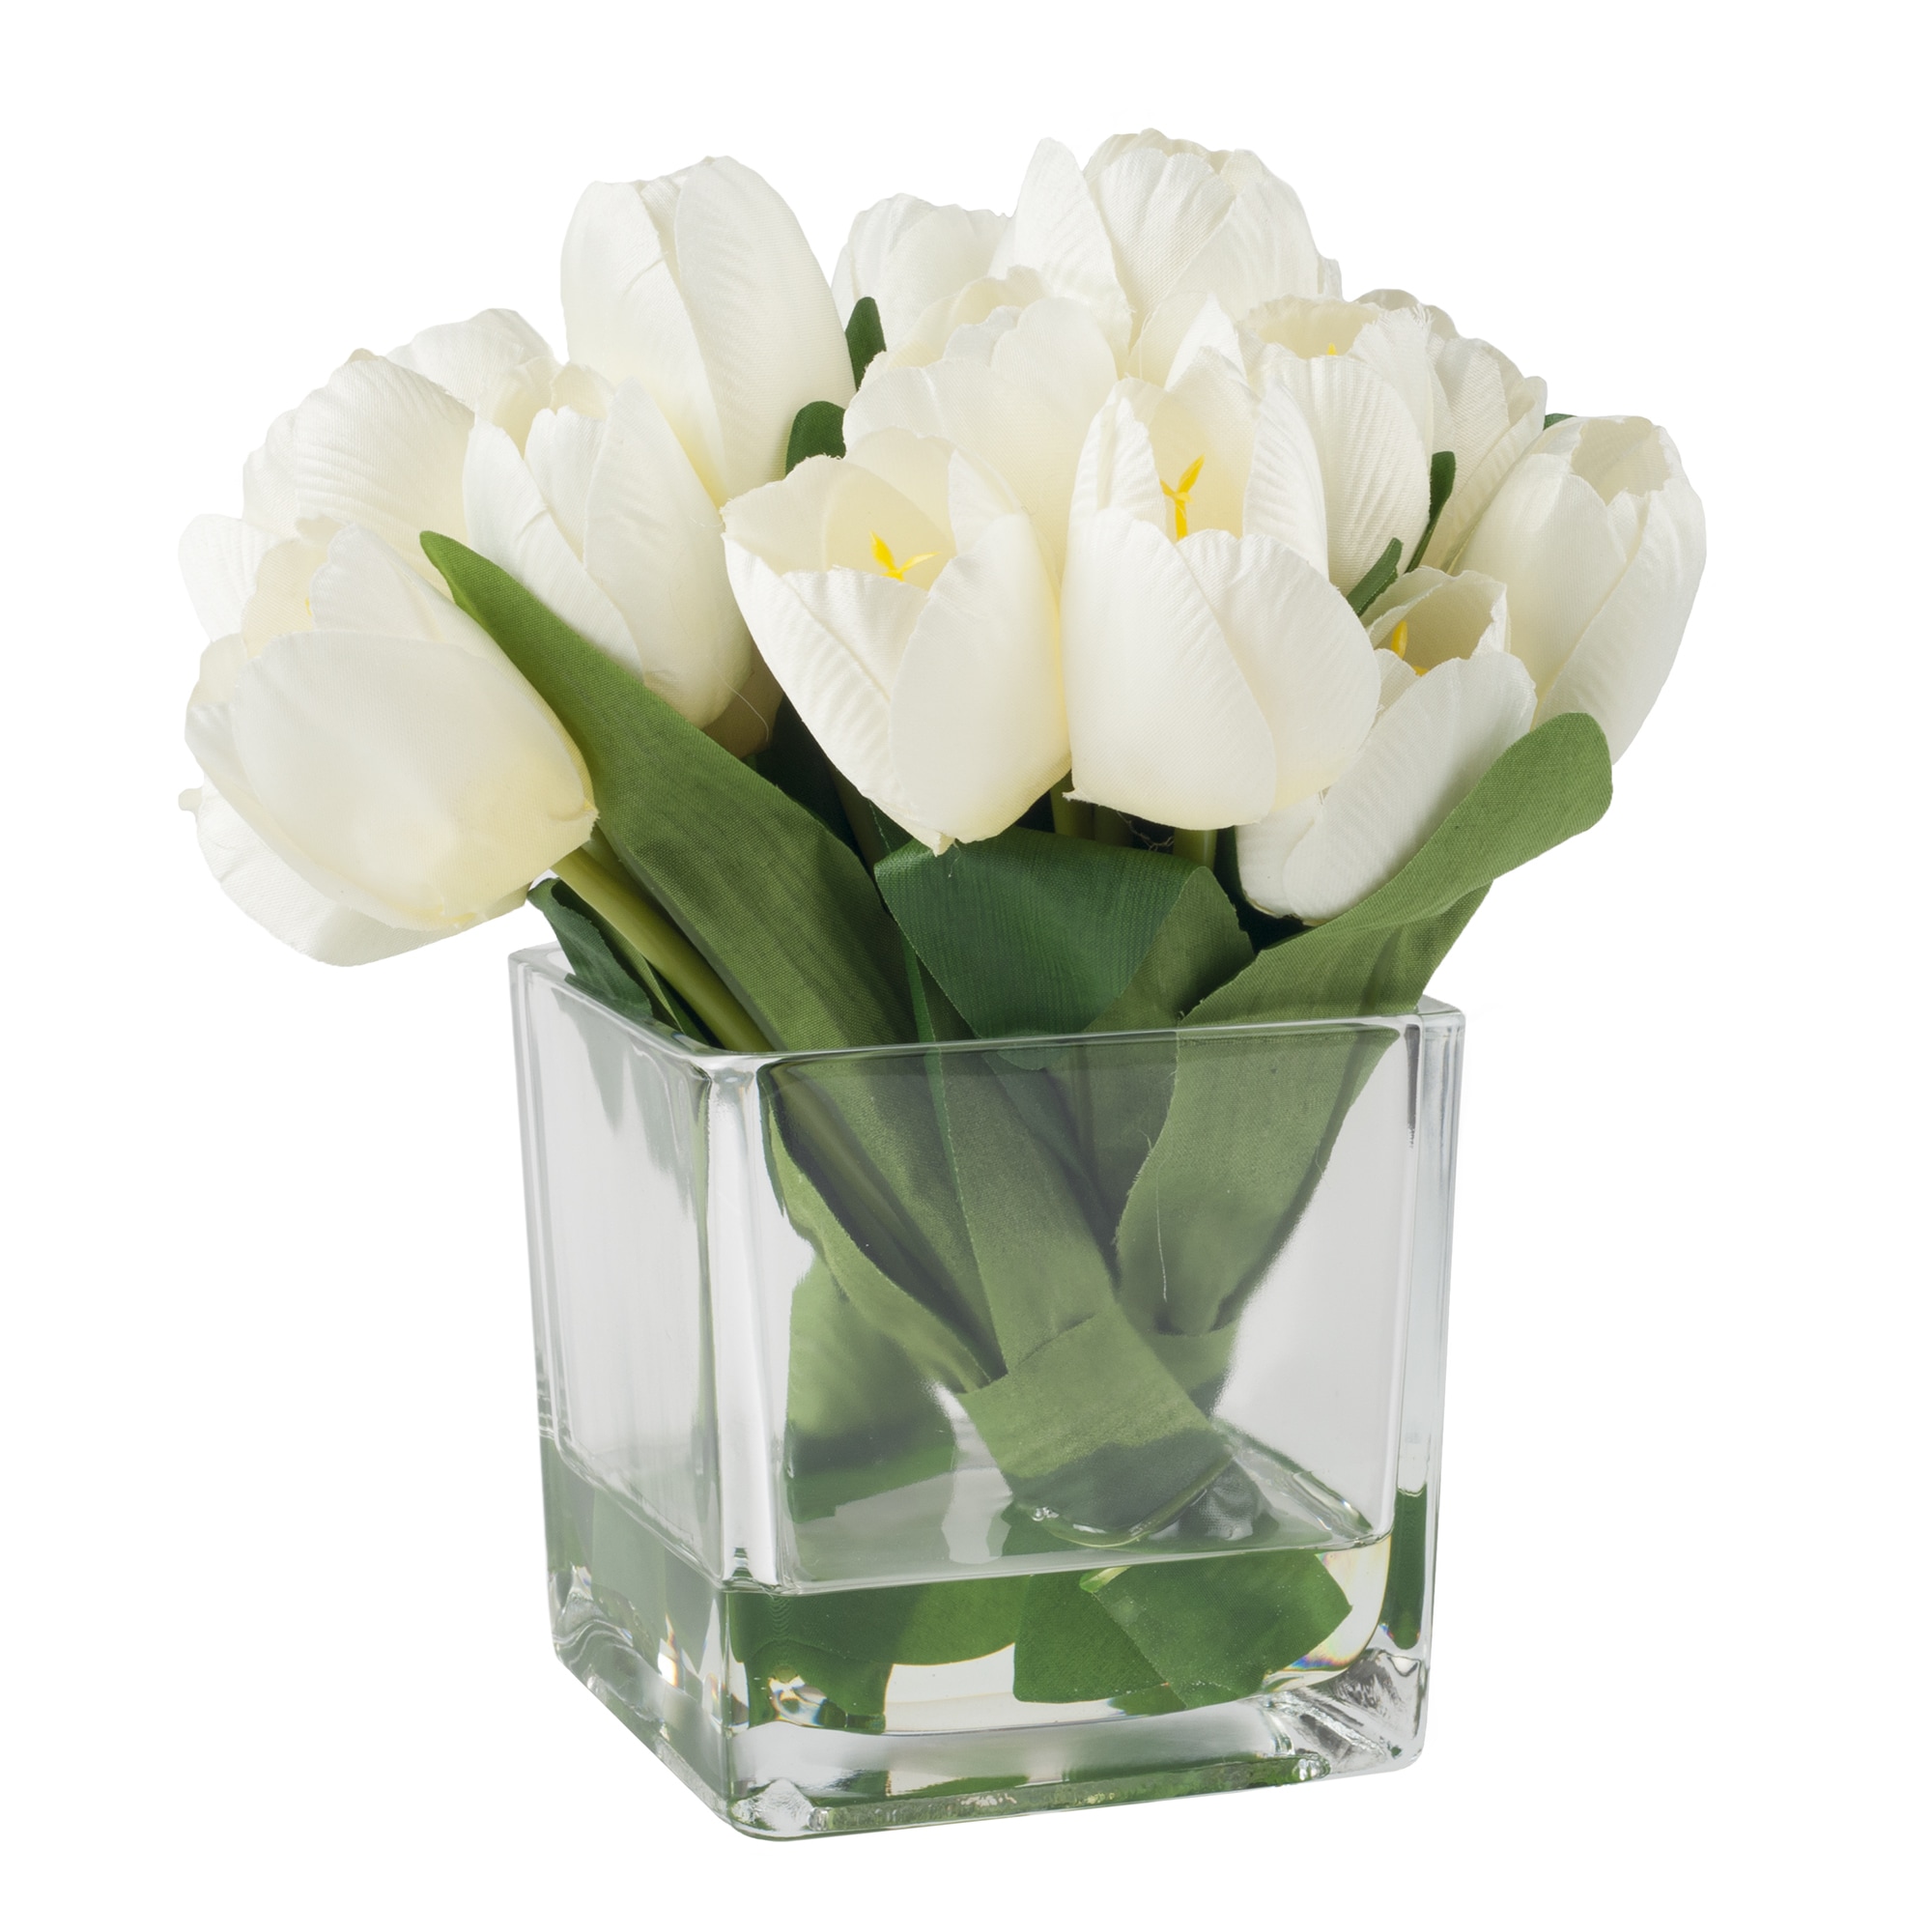 Для тюльпанов какая вода нужна в вазе. Цветы в прозрачной вазе. Ваза с тюльпанами. Белые тюльпаны букет. Белые тюльпаны в вазе.